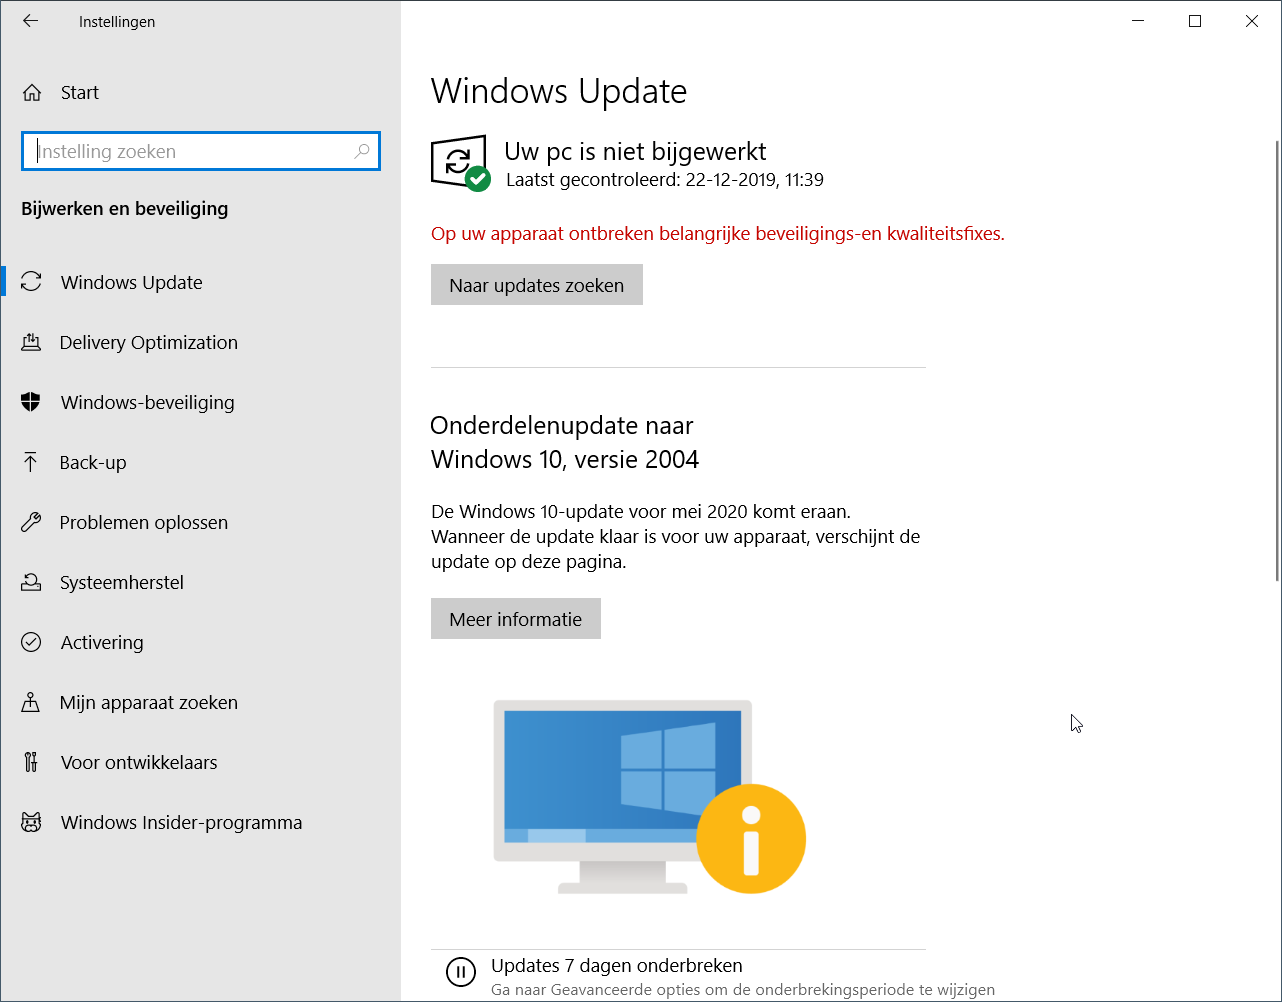 5ffd8b8dbedee-Windows_10-update_komt_eraan.png